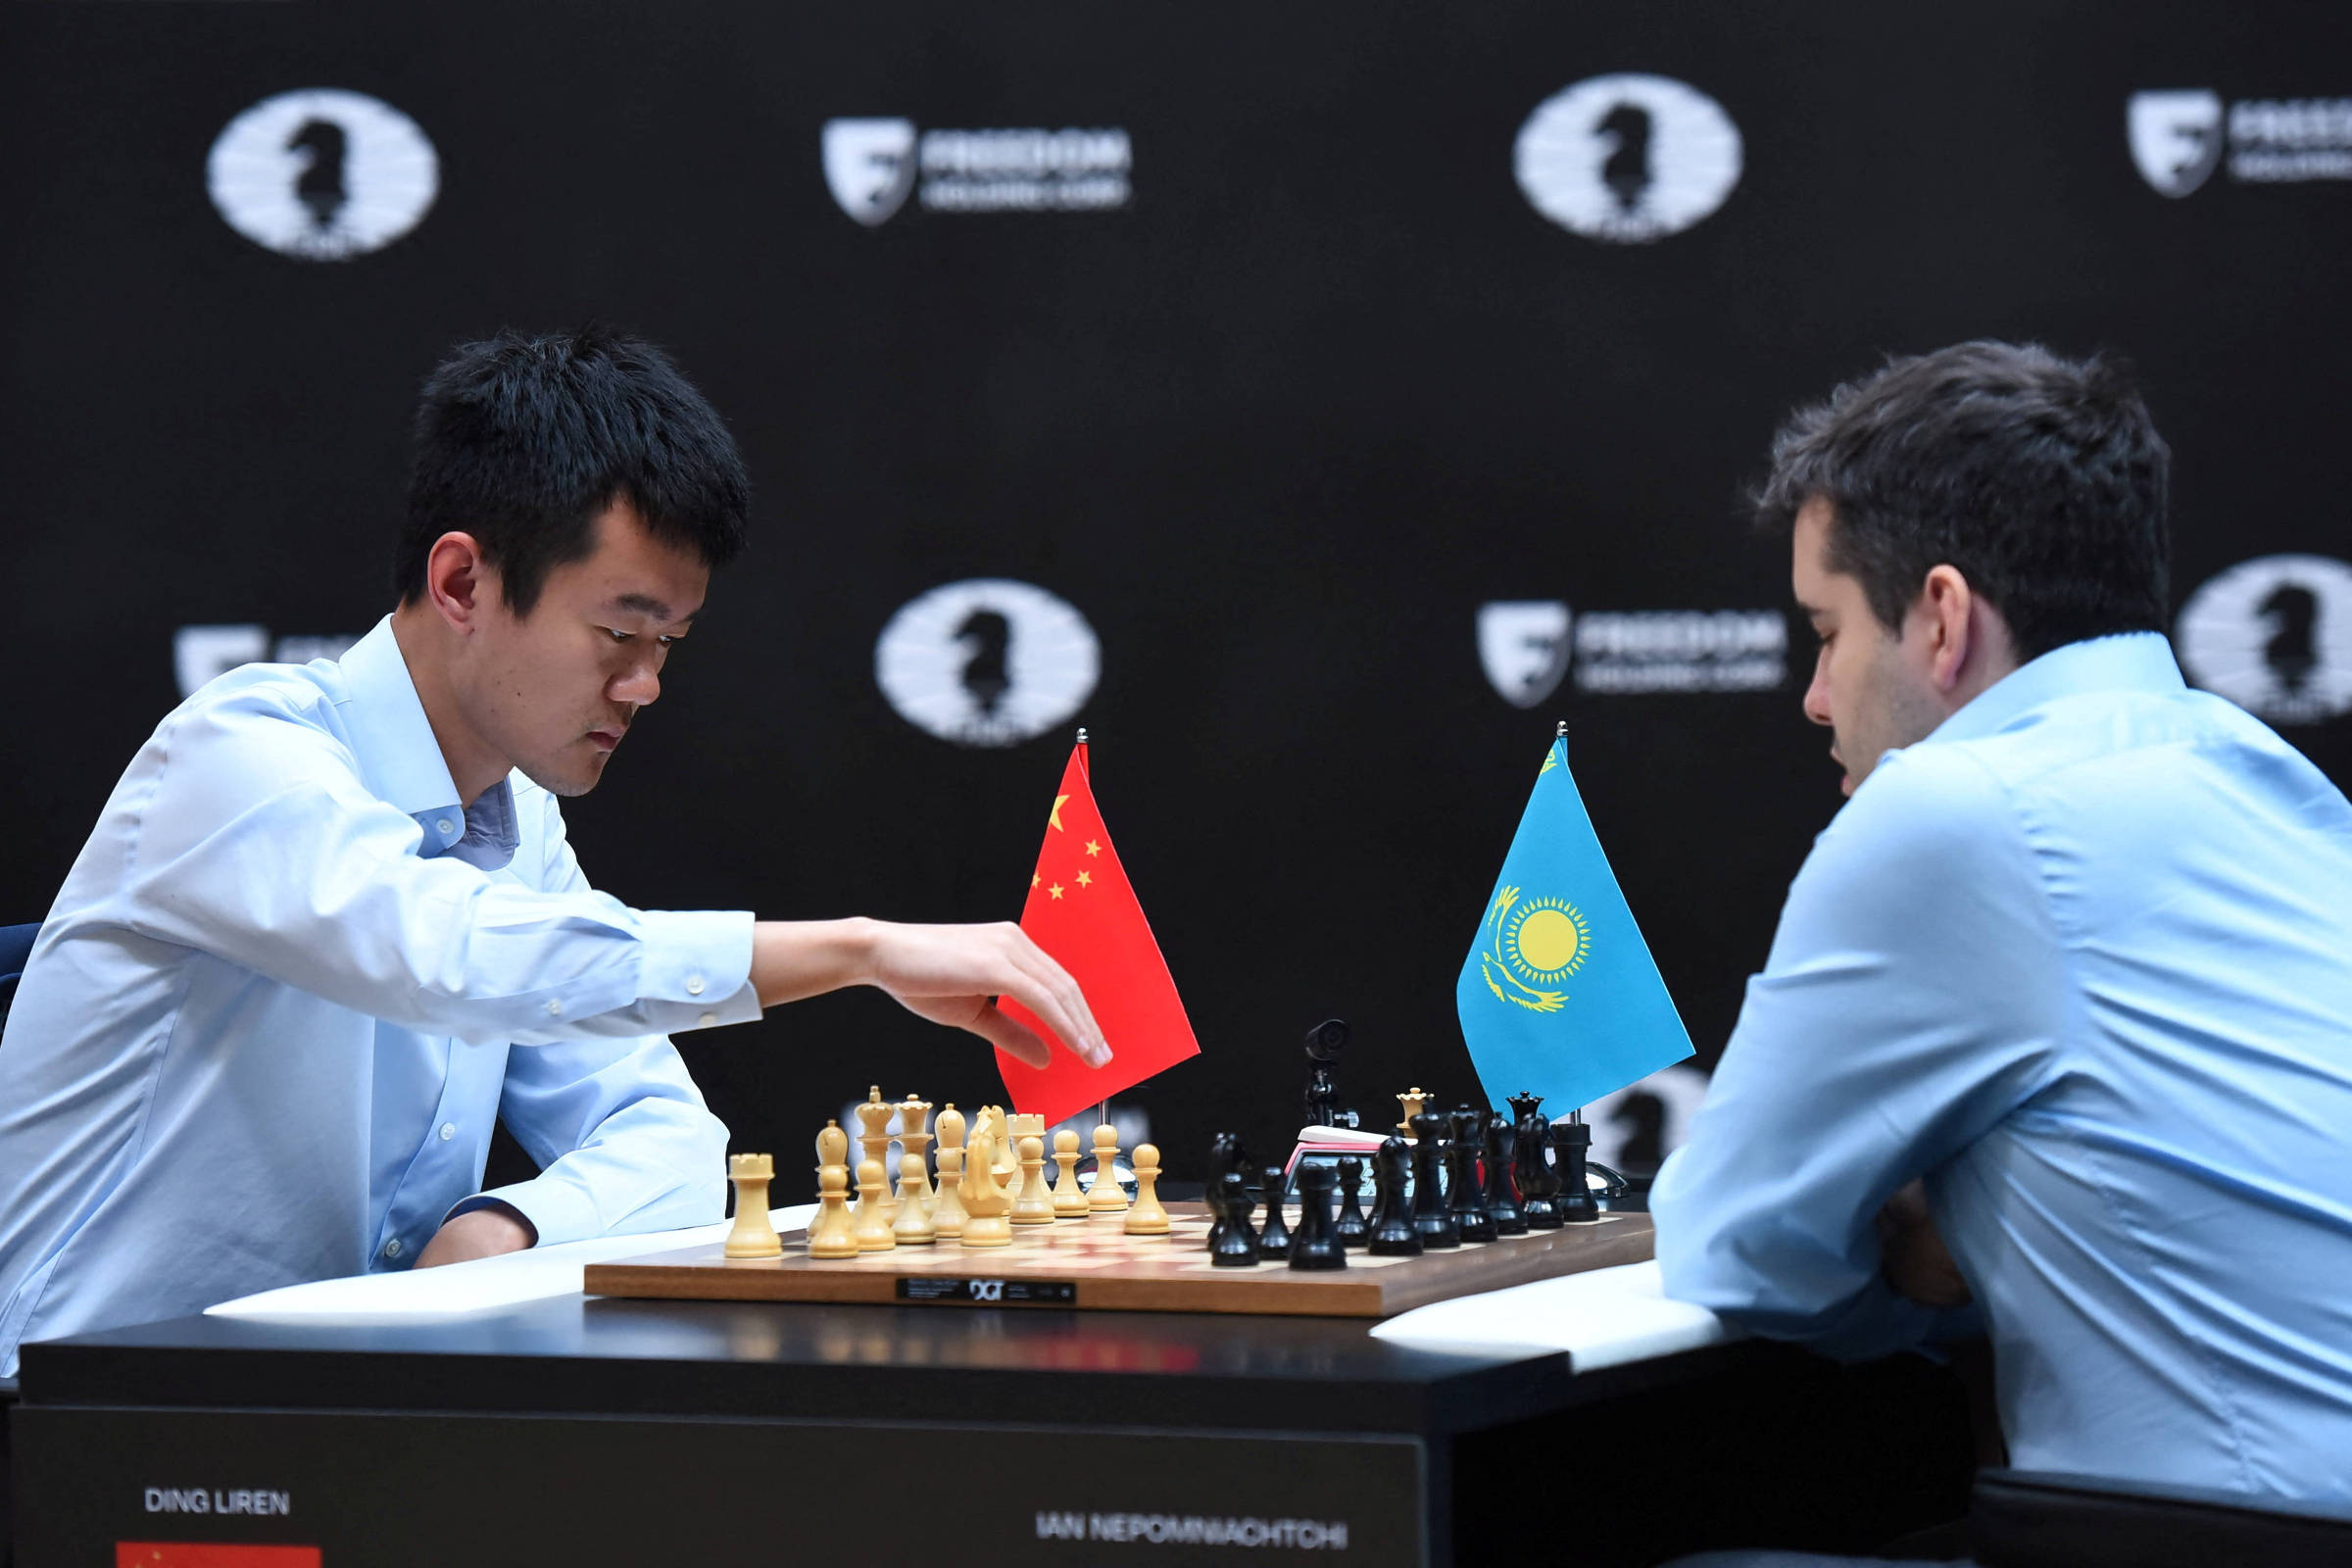 Xadrez: China tem seu 1º campeão mundial, derrotando russo - 30/04